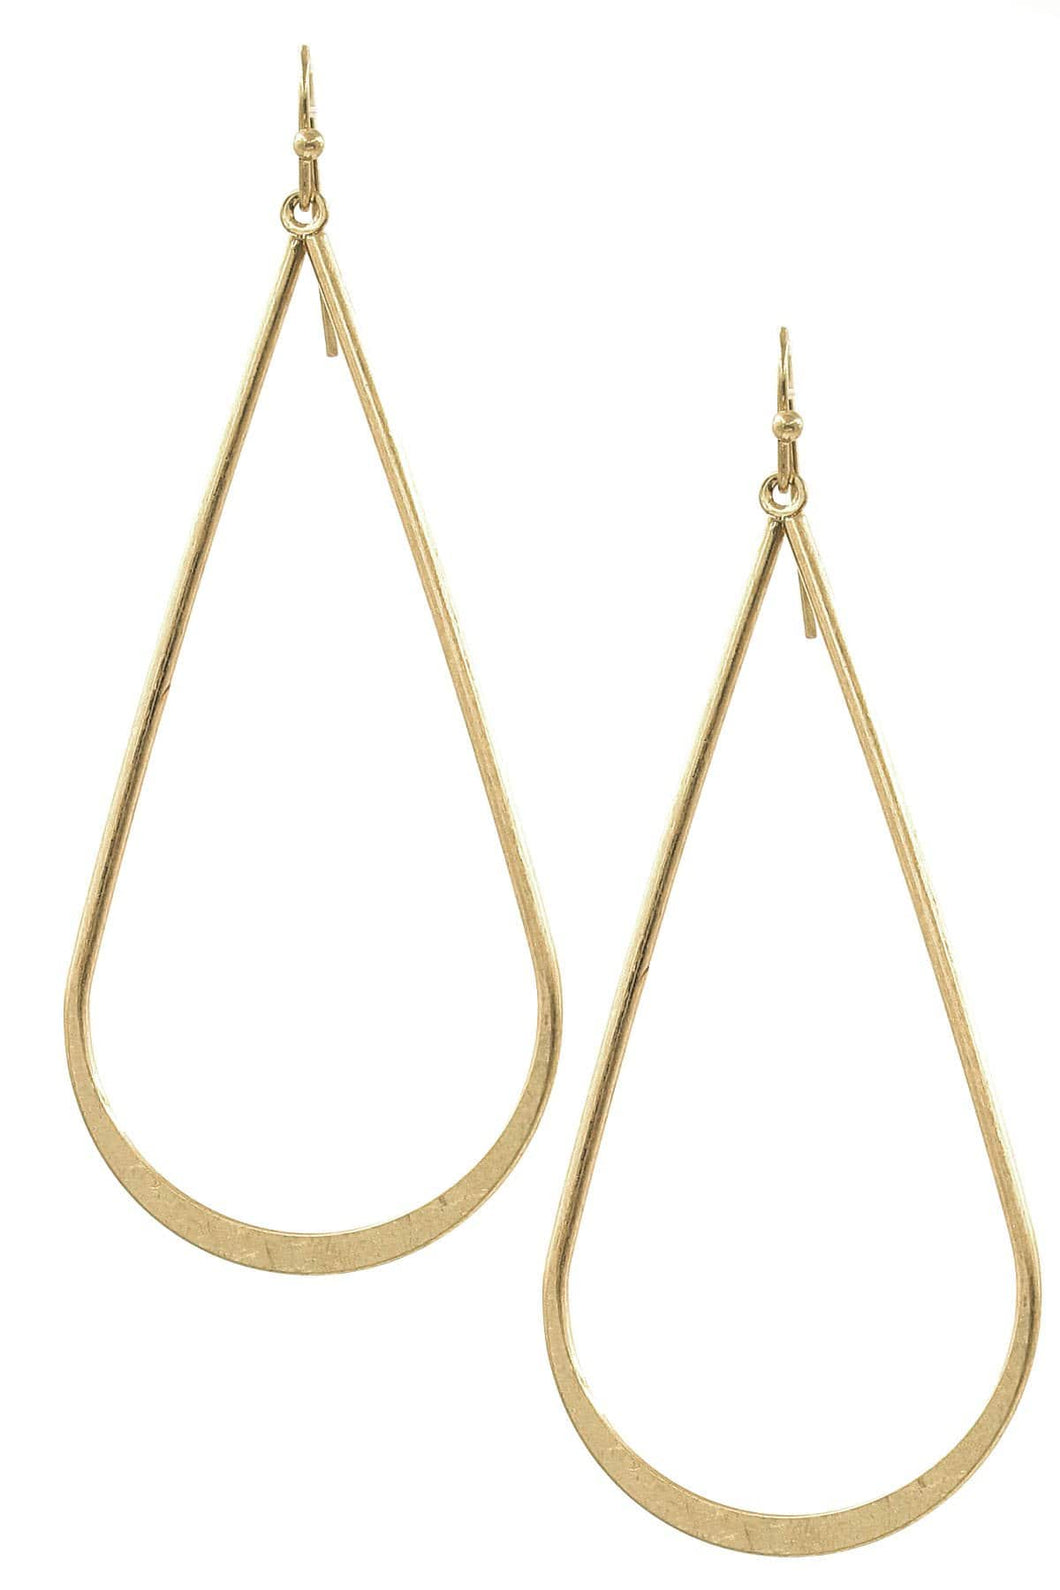 Earrings Womens Large Gold Teardrop Metal Earrings Jewelry